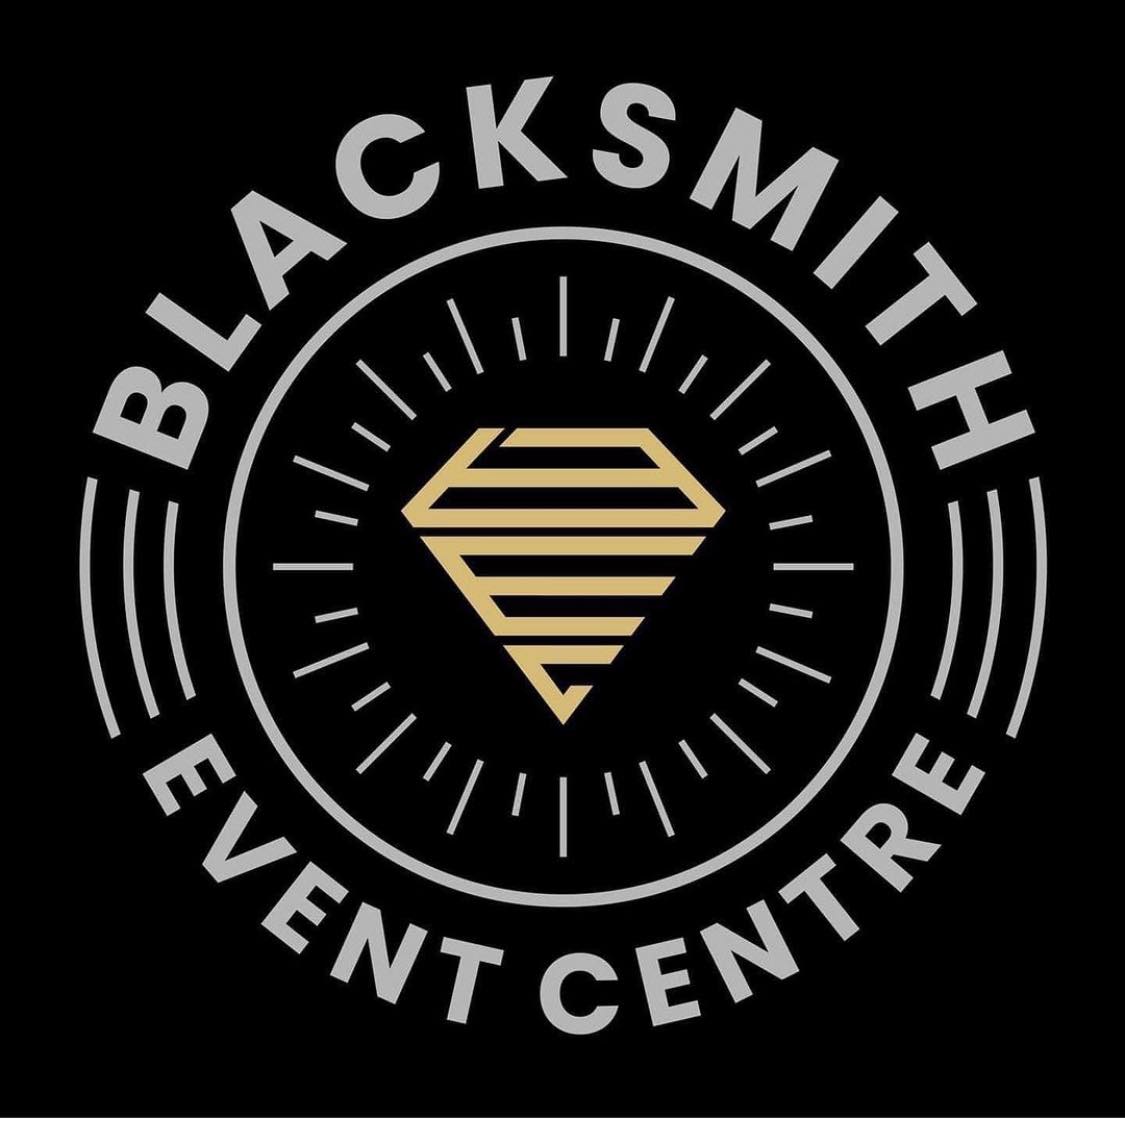 Blacksmith Event Centre